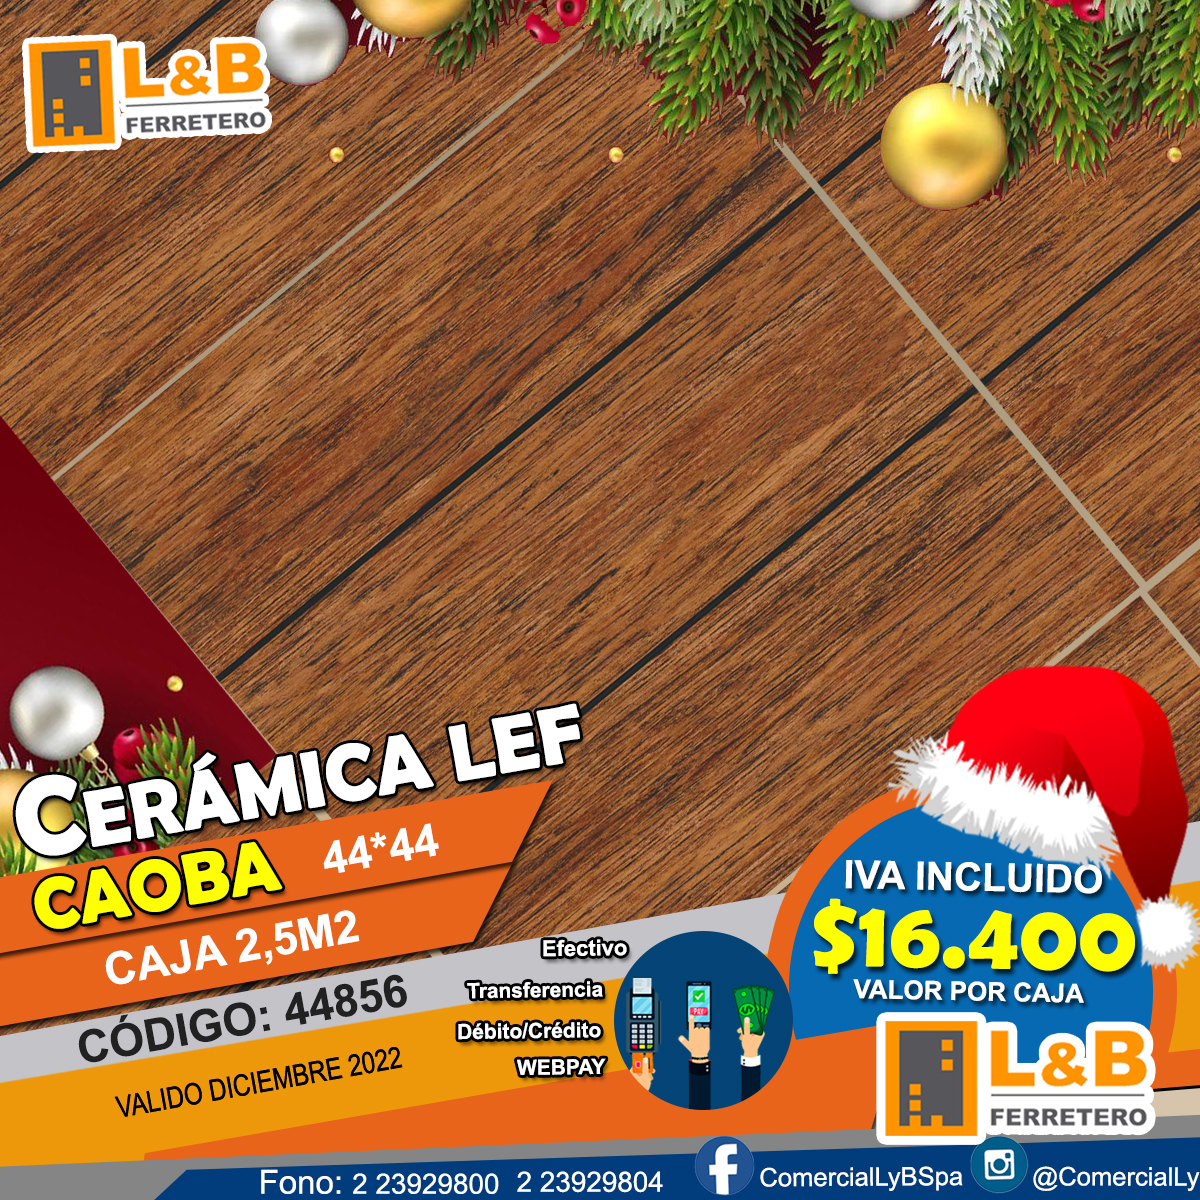 Ceramica LEF 44*44 GR44856 CAOBA caja de 2,5M2